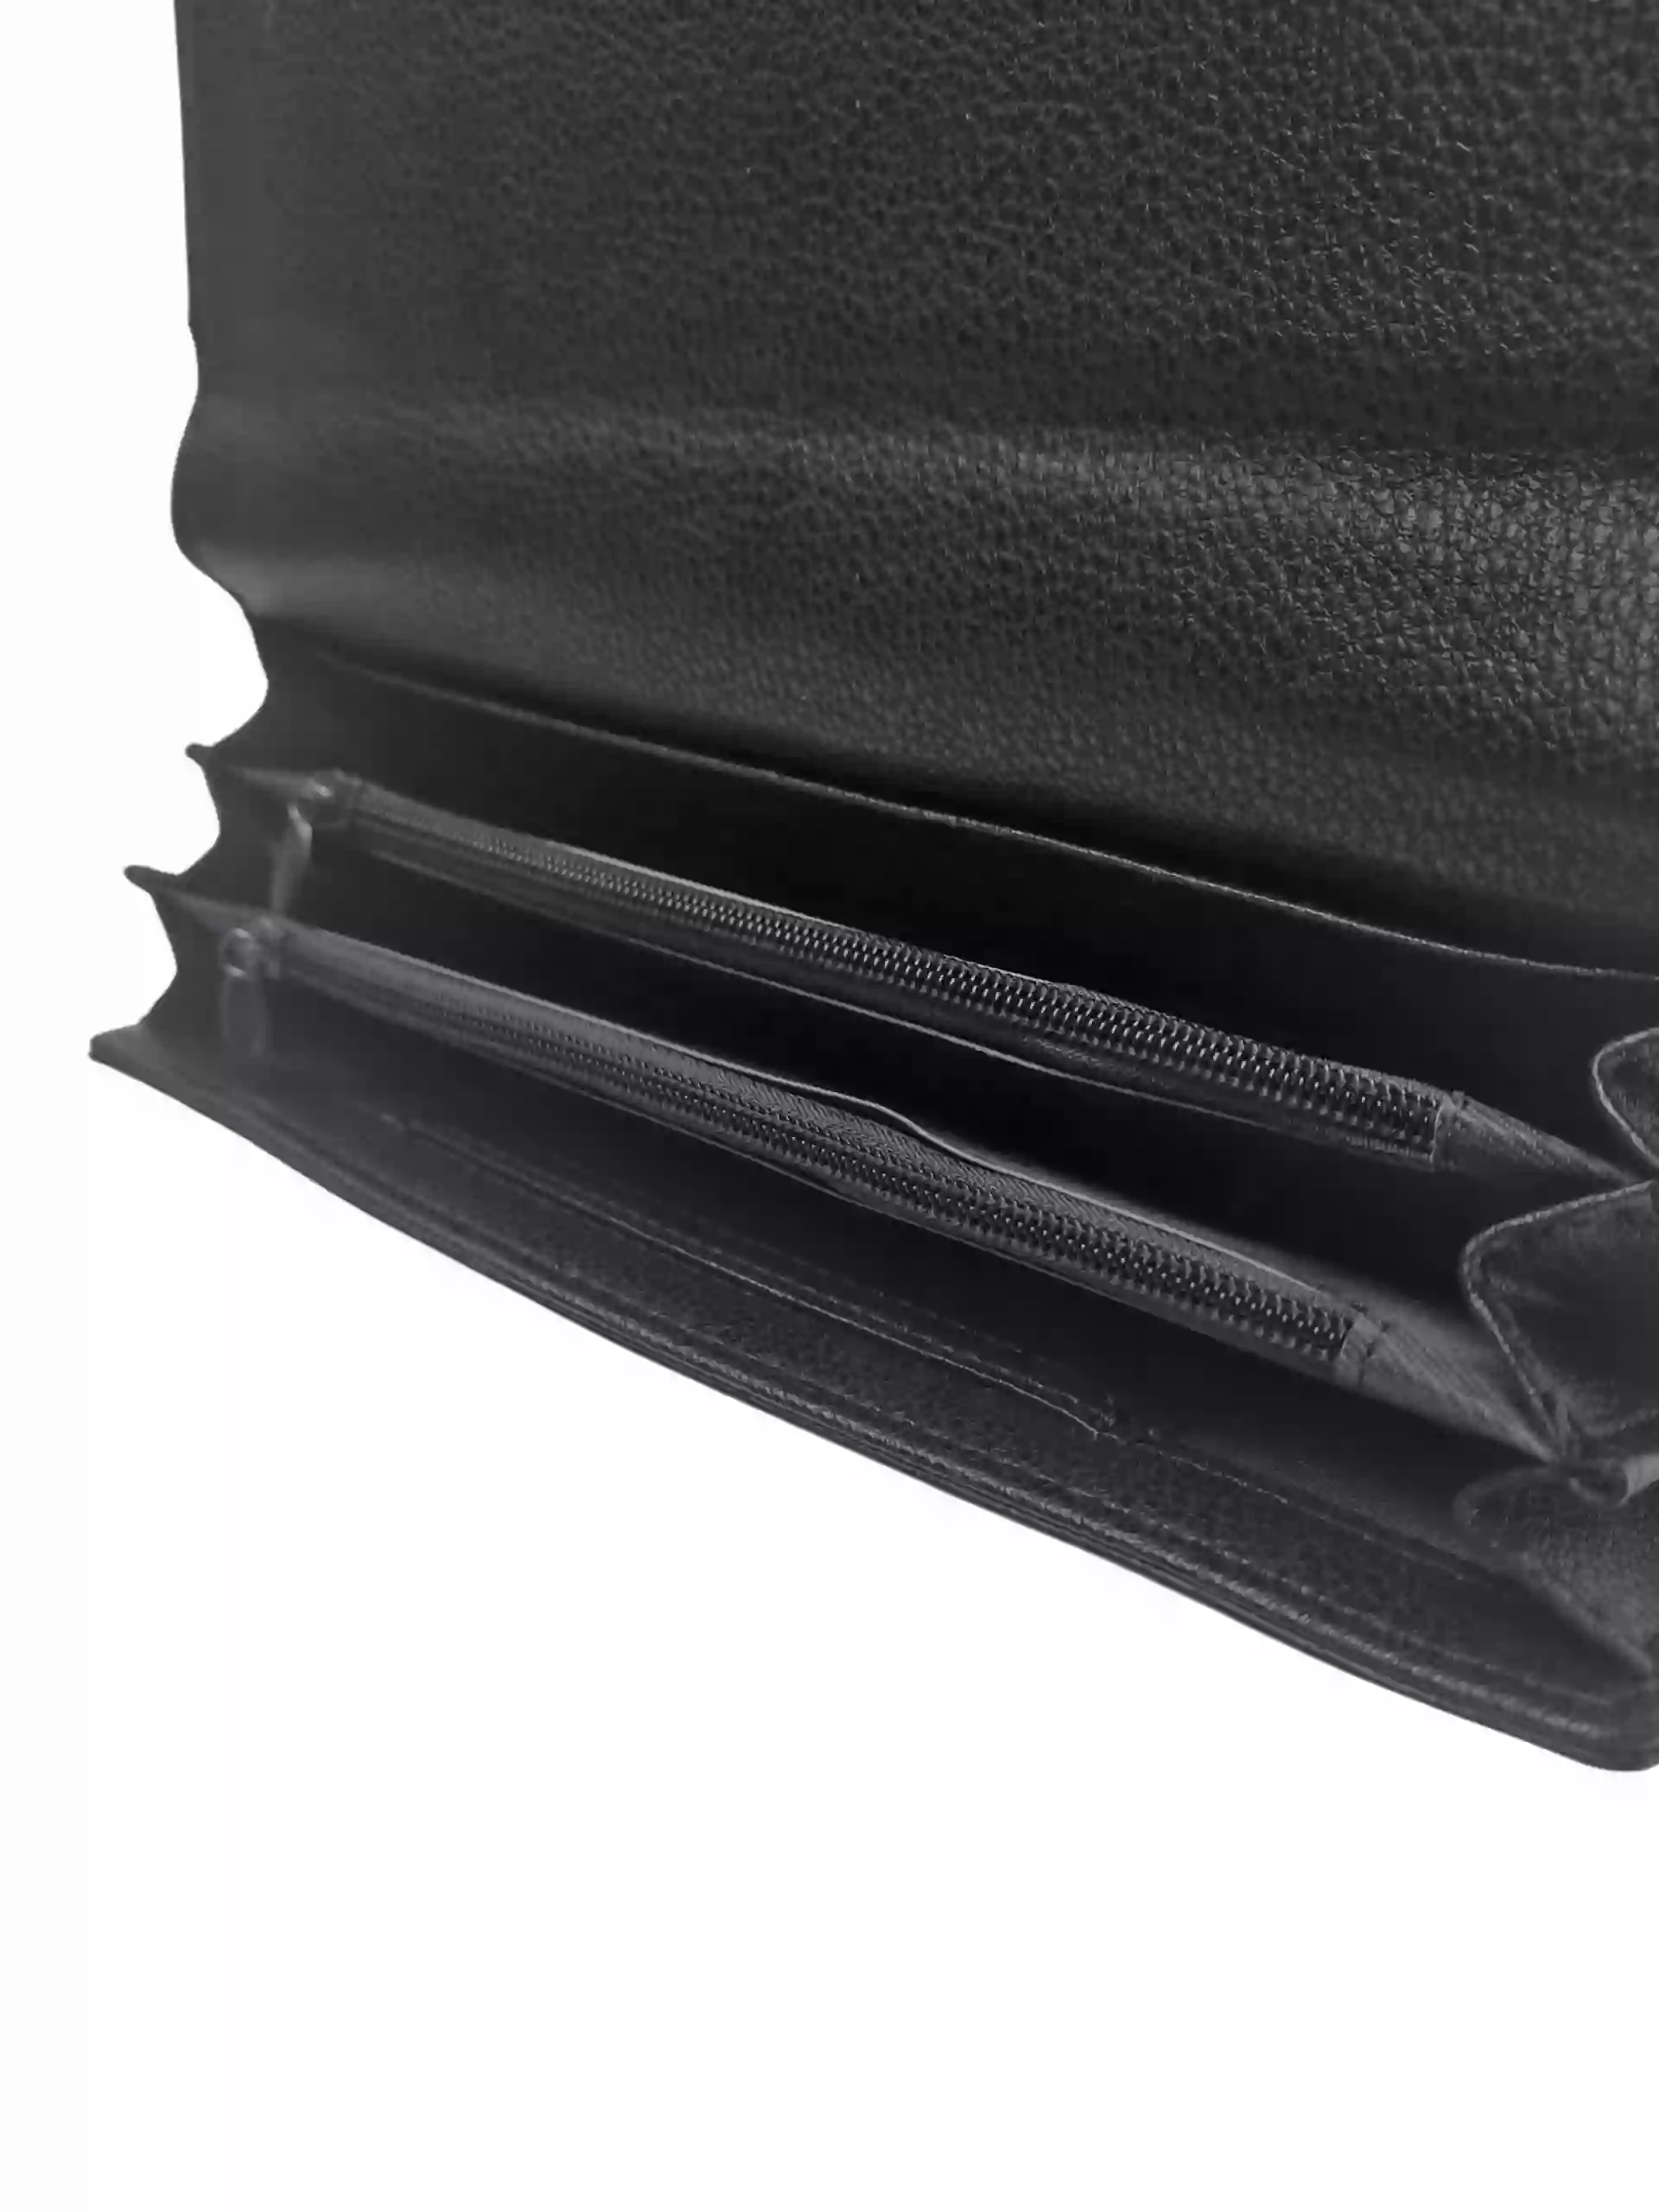 Elegantní černá dámská peněženka na magnetky, New Berry, 108-1, vnitřní uspořádání peněženky